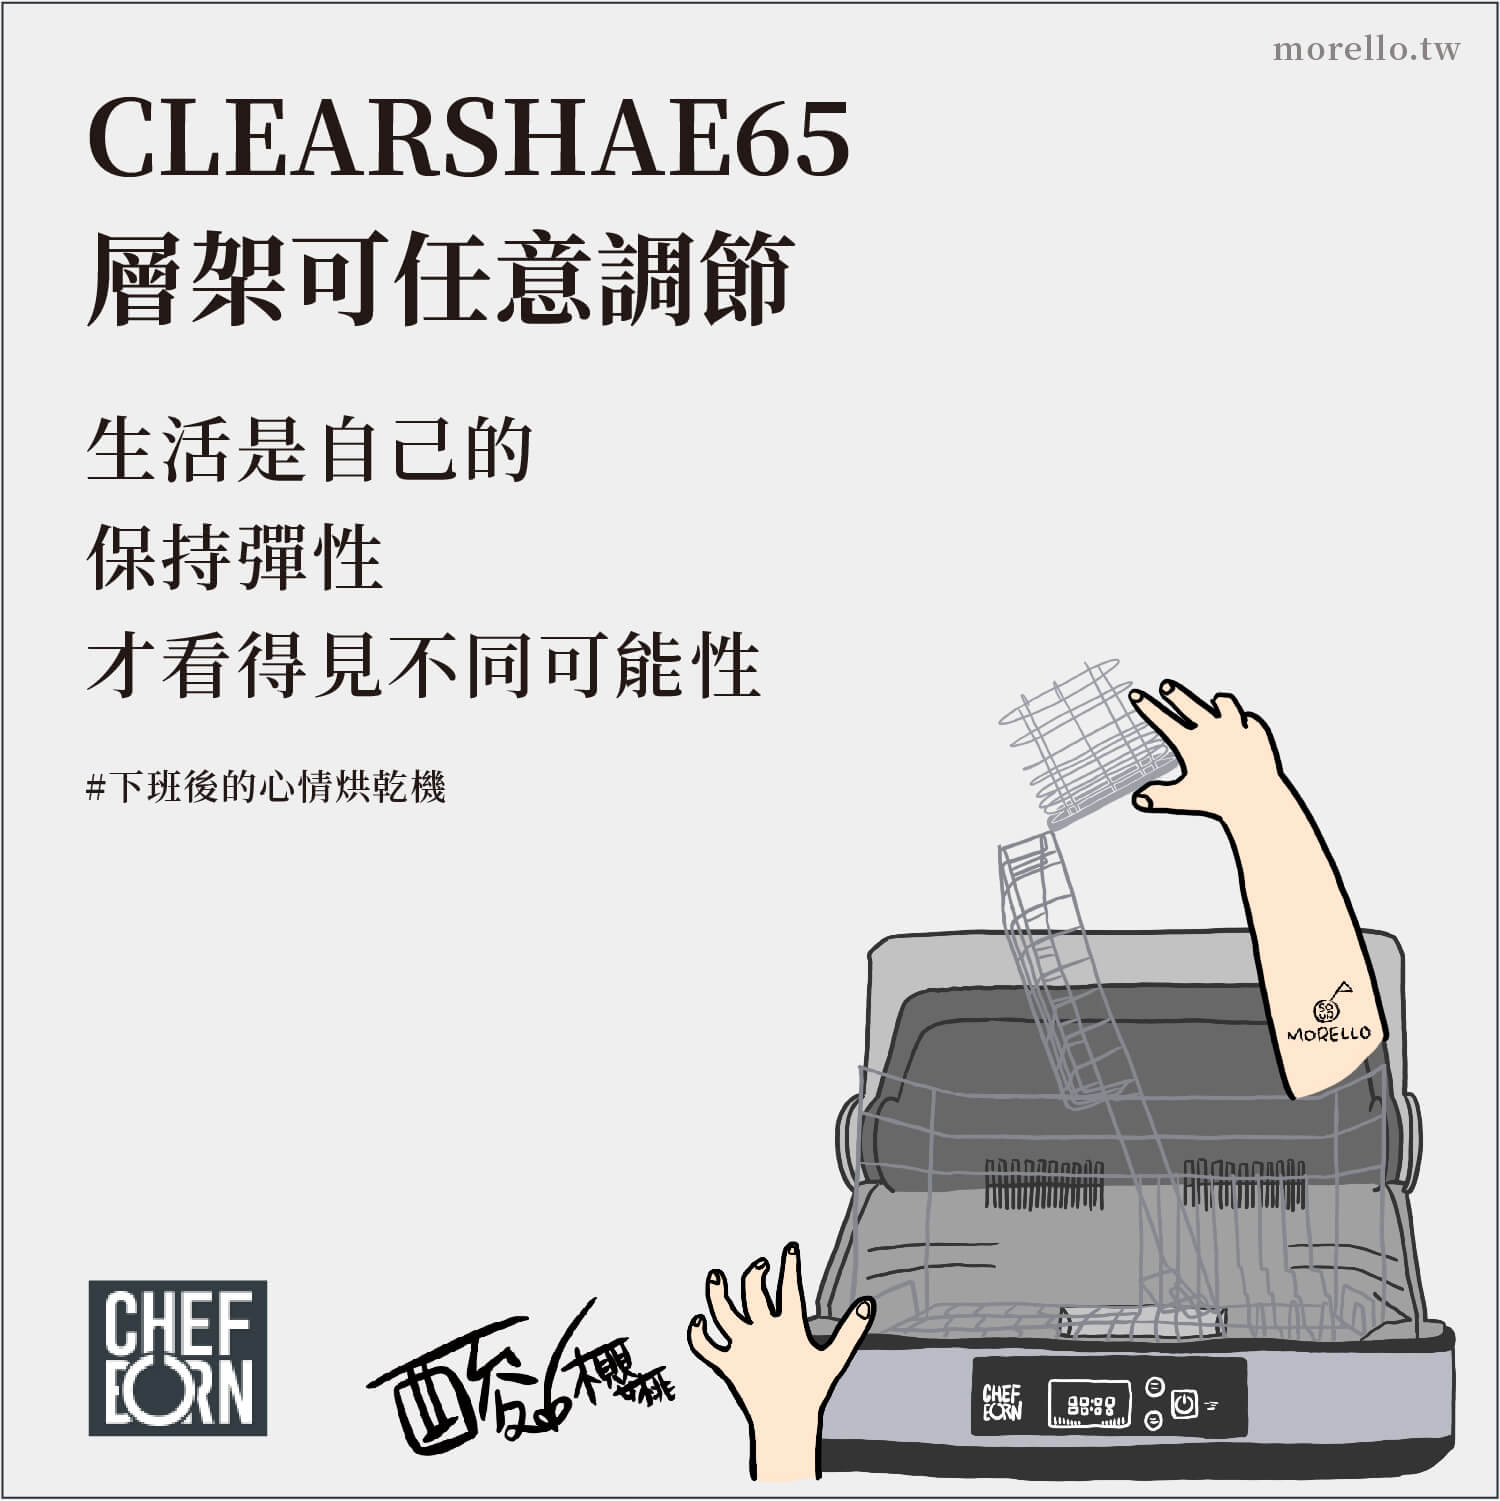 【CHEFBORN】CLEARSHAE65 使用的食品級不鏽鋼層架，可以隨著需求調整。想放大型平底鍋、湯鍋、奶瓶，甚至拿來消毒小朋友的玩具、娃娃都可以。